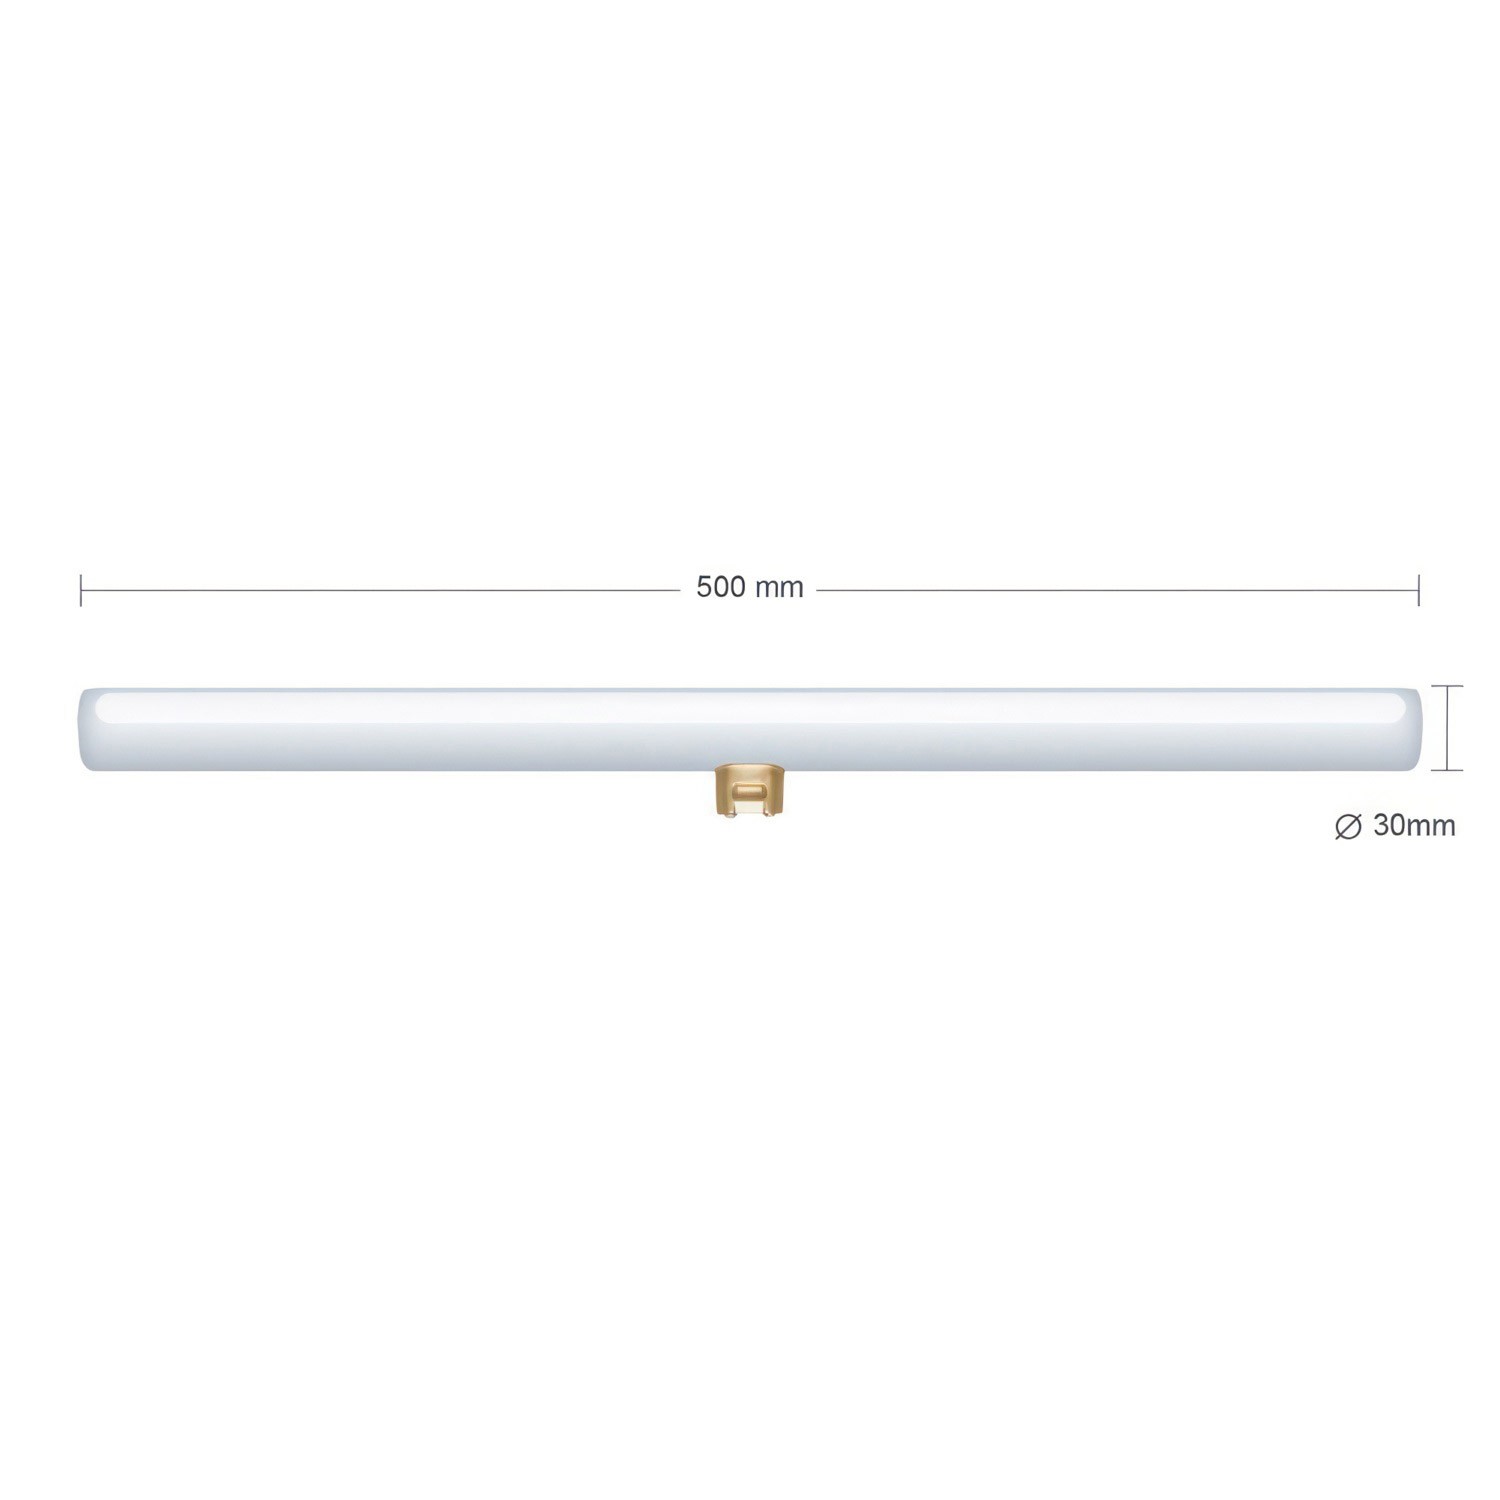 S14d LED lineáris opál izzó - Hossz 500 mm 6,2W 460 Lm 2700K dimmelhető - S14 rendszerhez